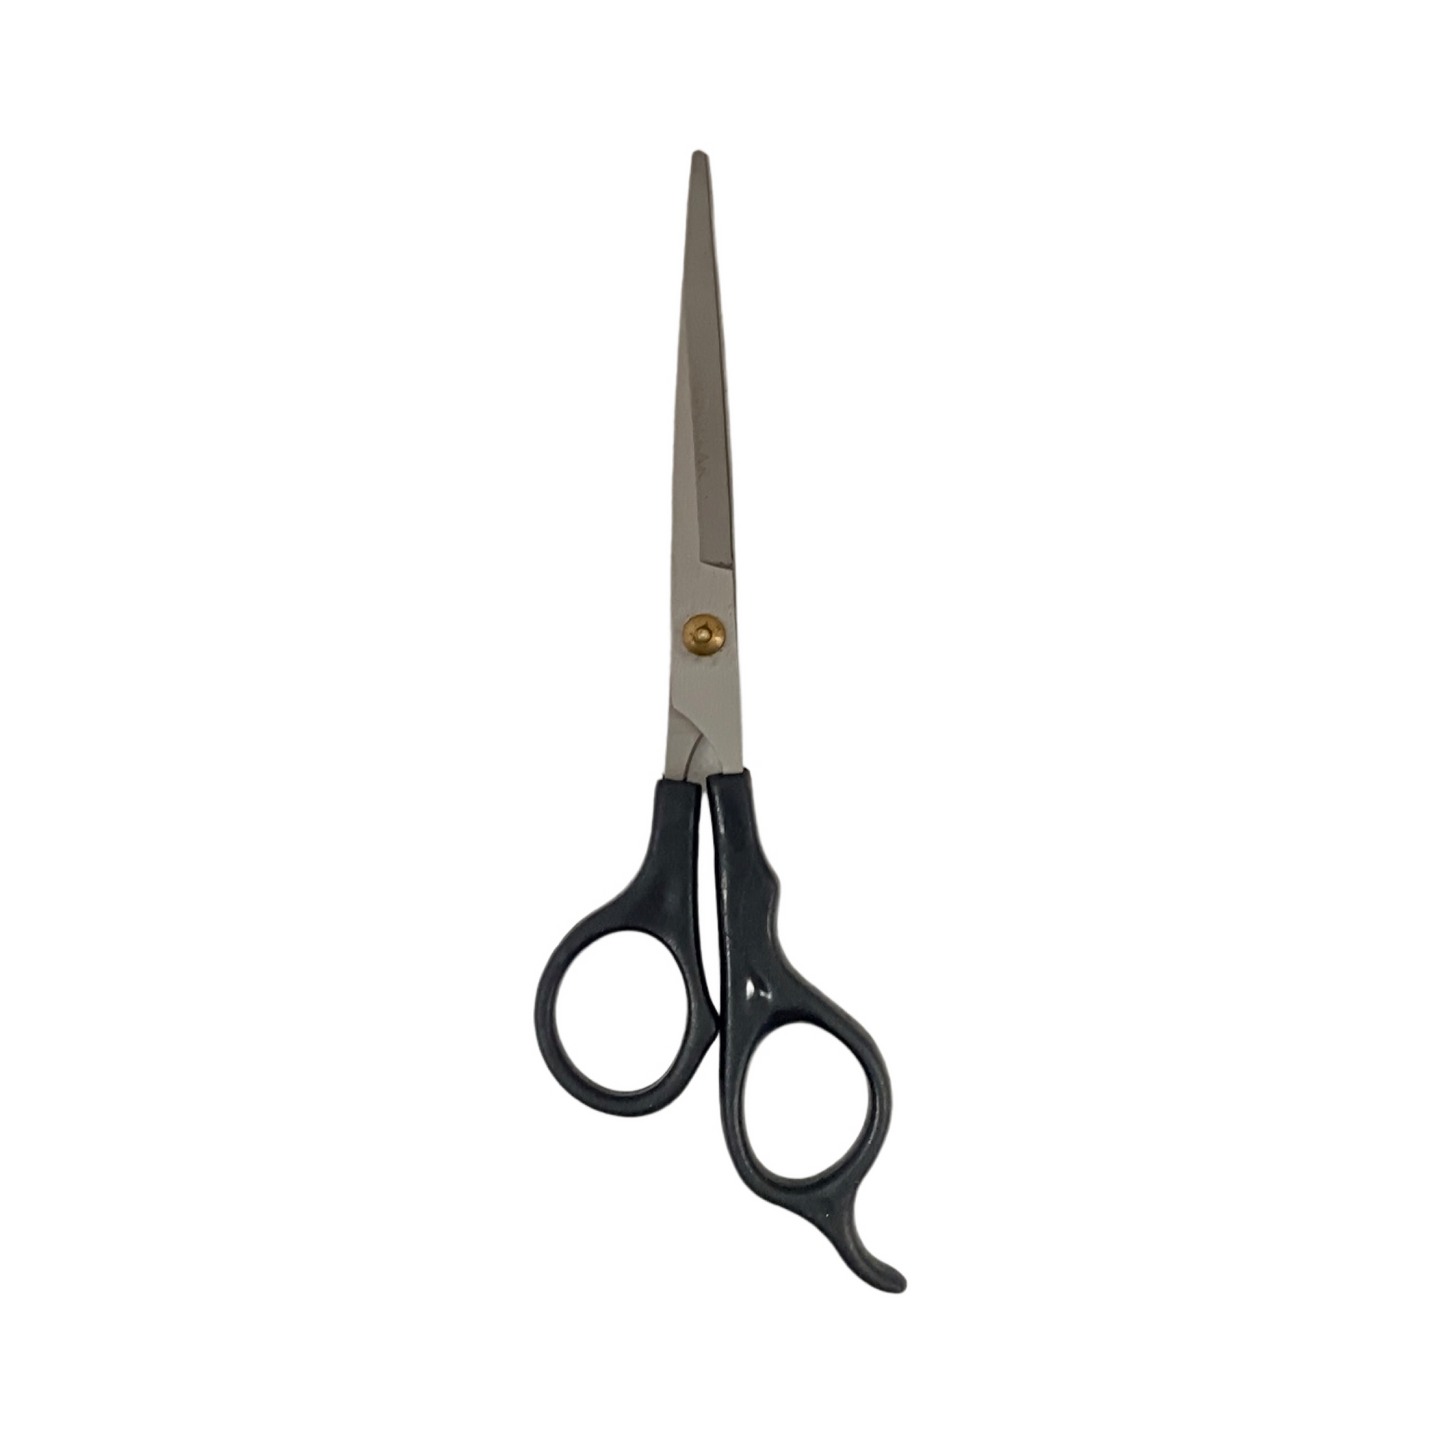 Basic Stainless Steel Barber's Scissors